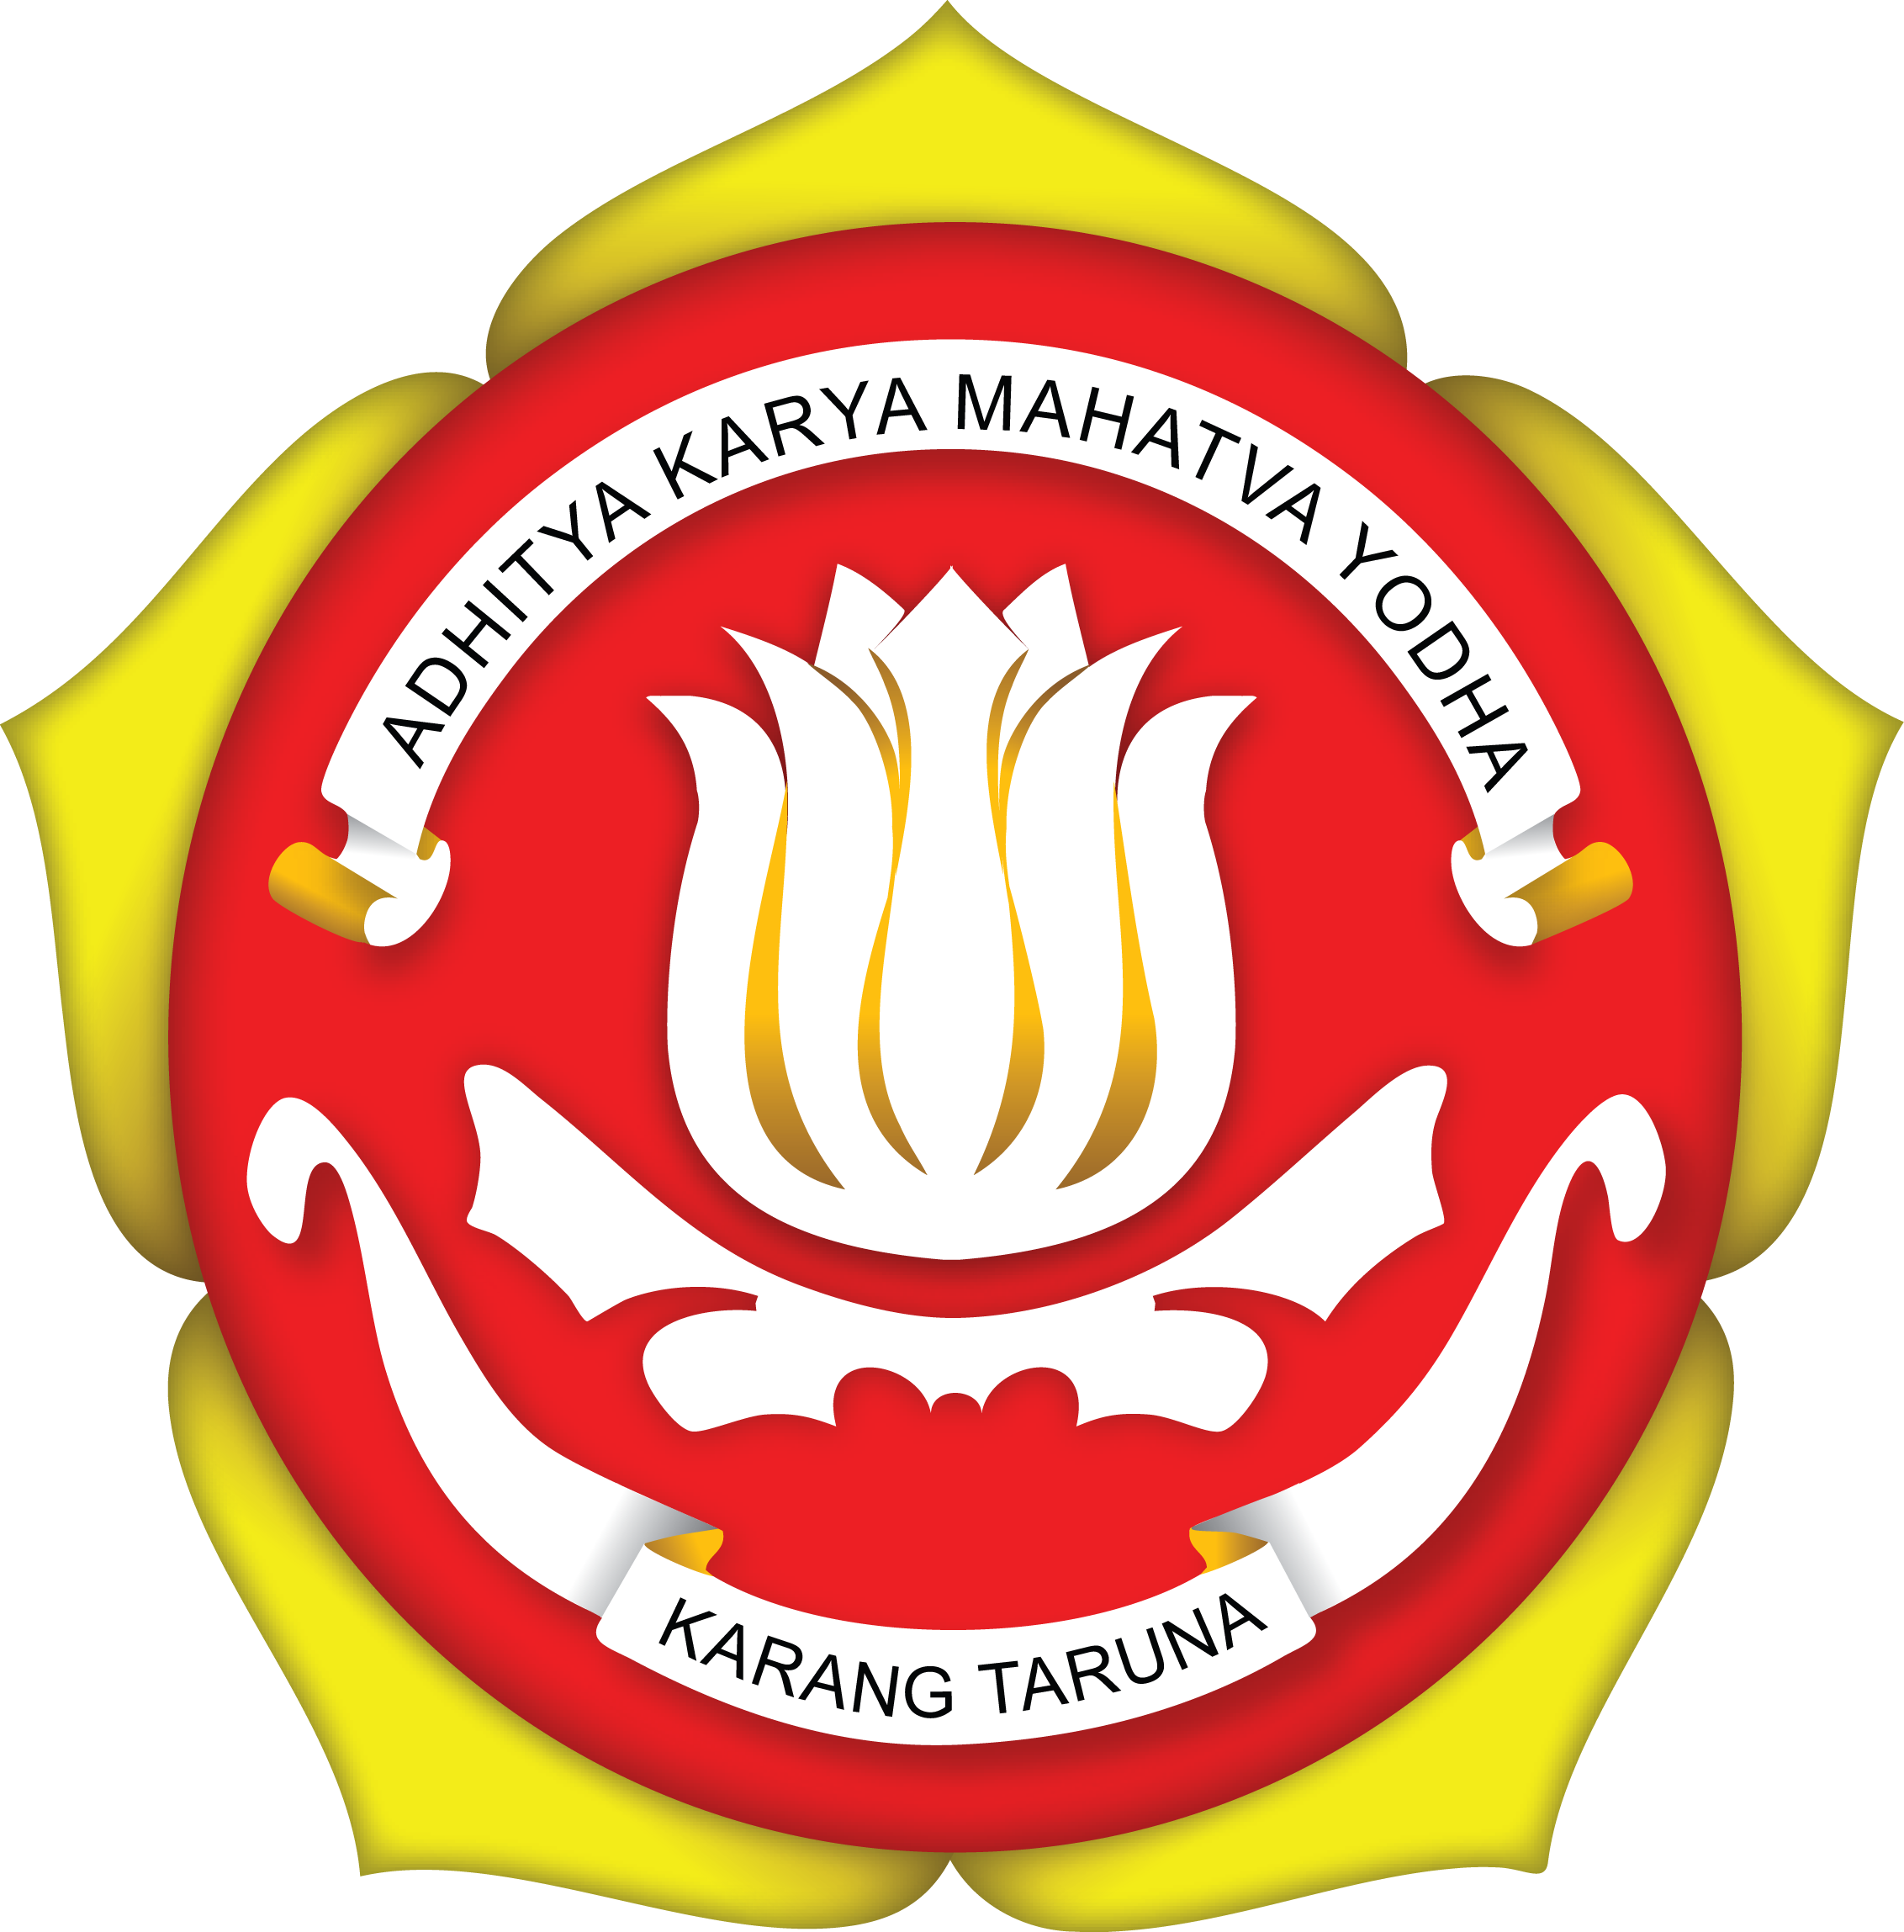 karang taruna logo transparent #31377